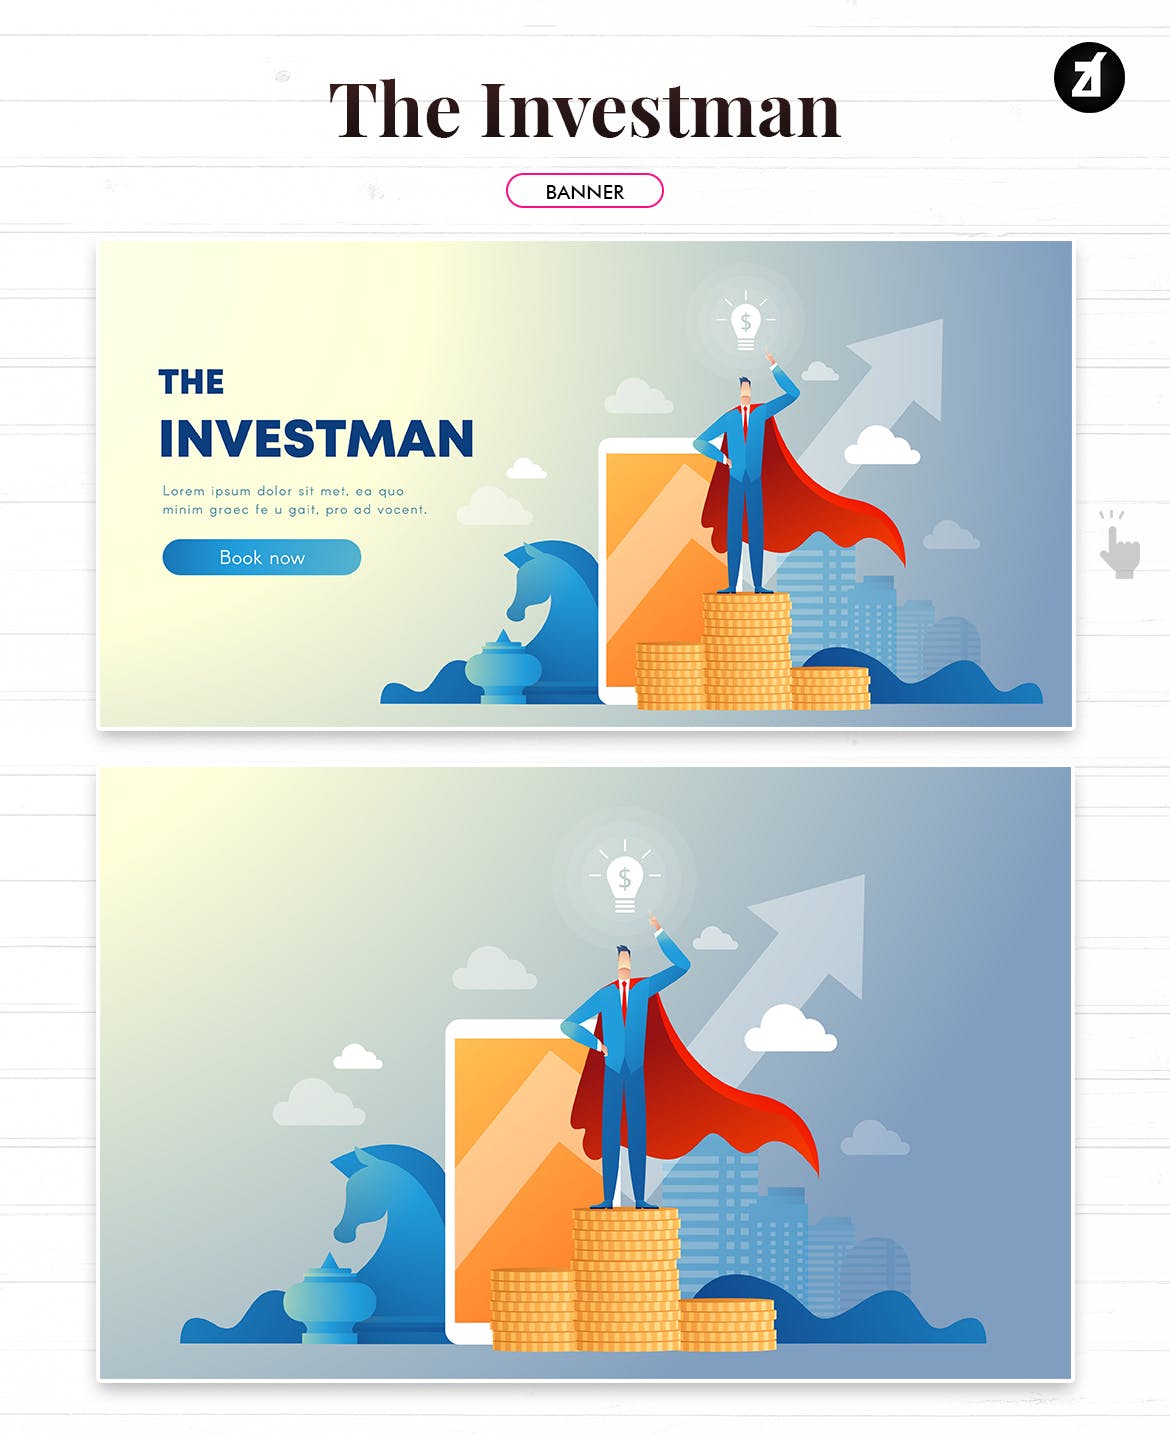 投资者主题矢量普贤居精选概念插画素材 The investman illustration with text layout插图(2)